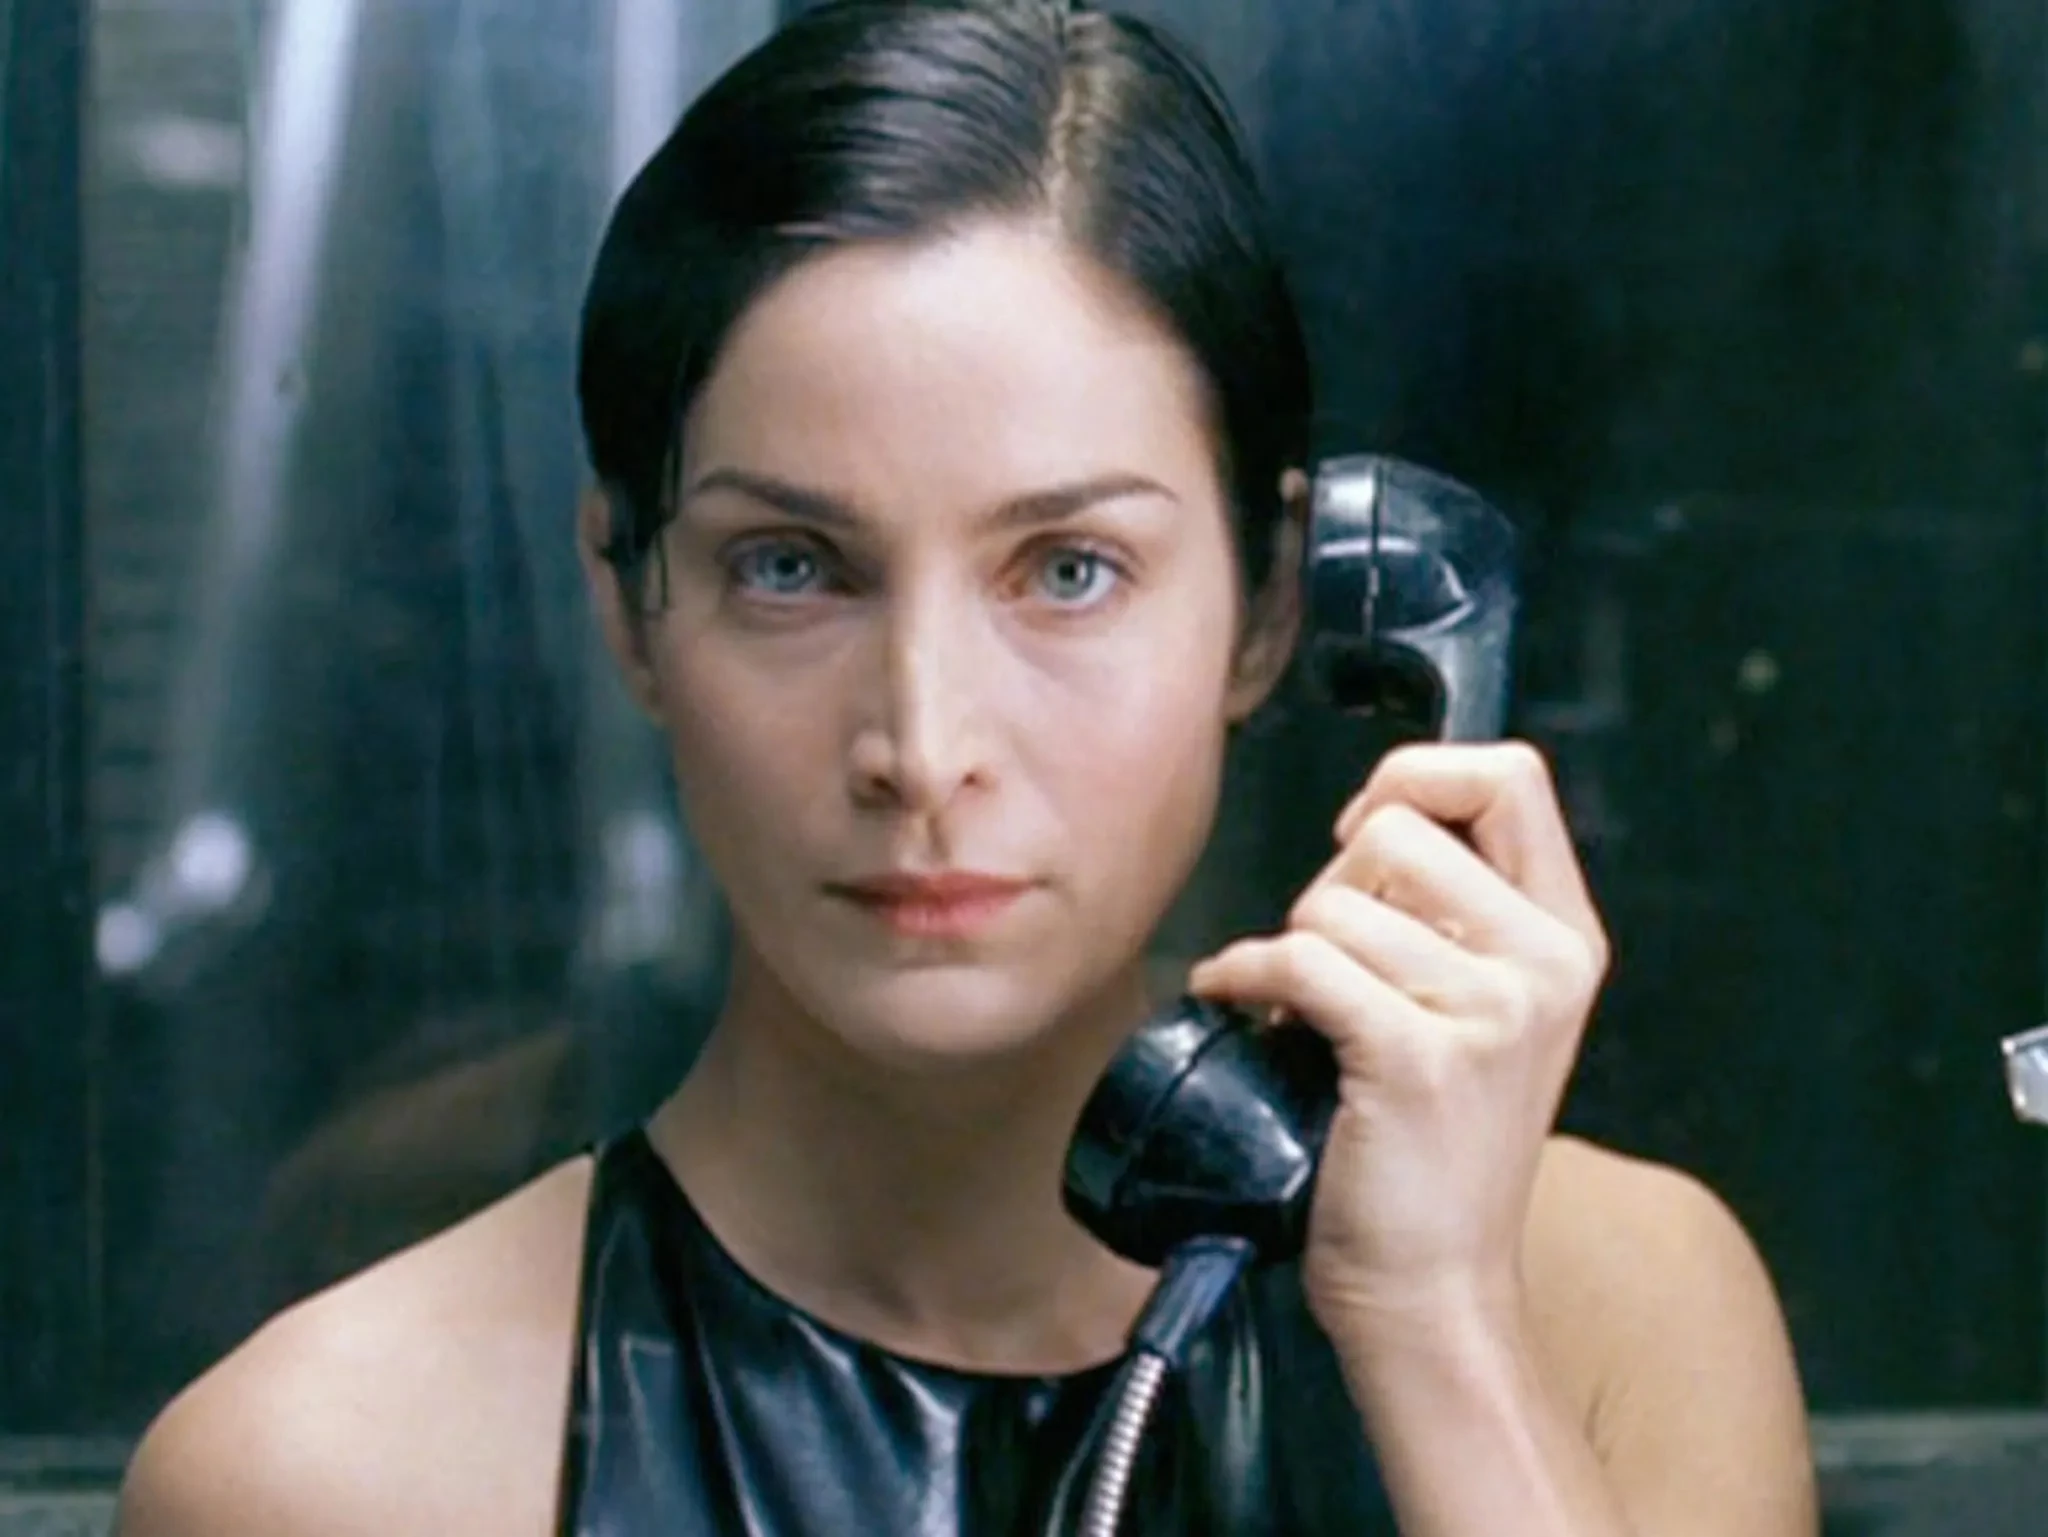 Керрі-Енн Мосс в ролі Трініті в фільмі "Матриця", 1999, реж. сестри Вачовскі